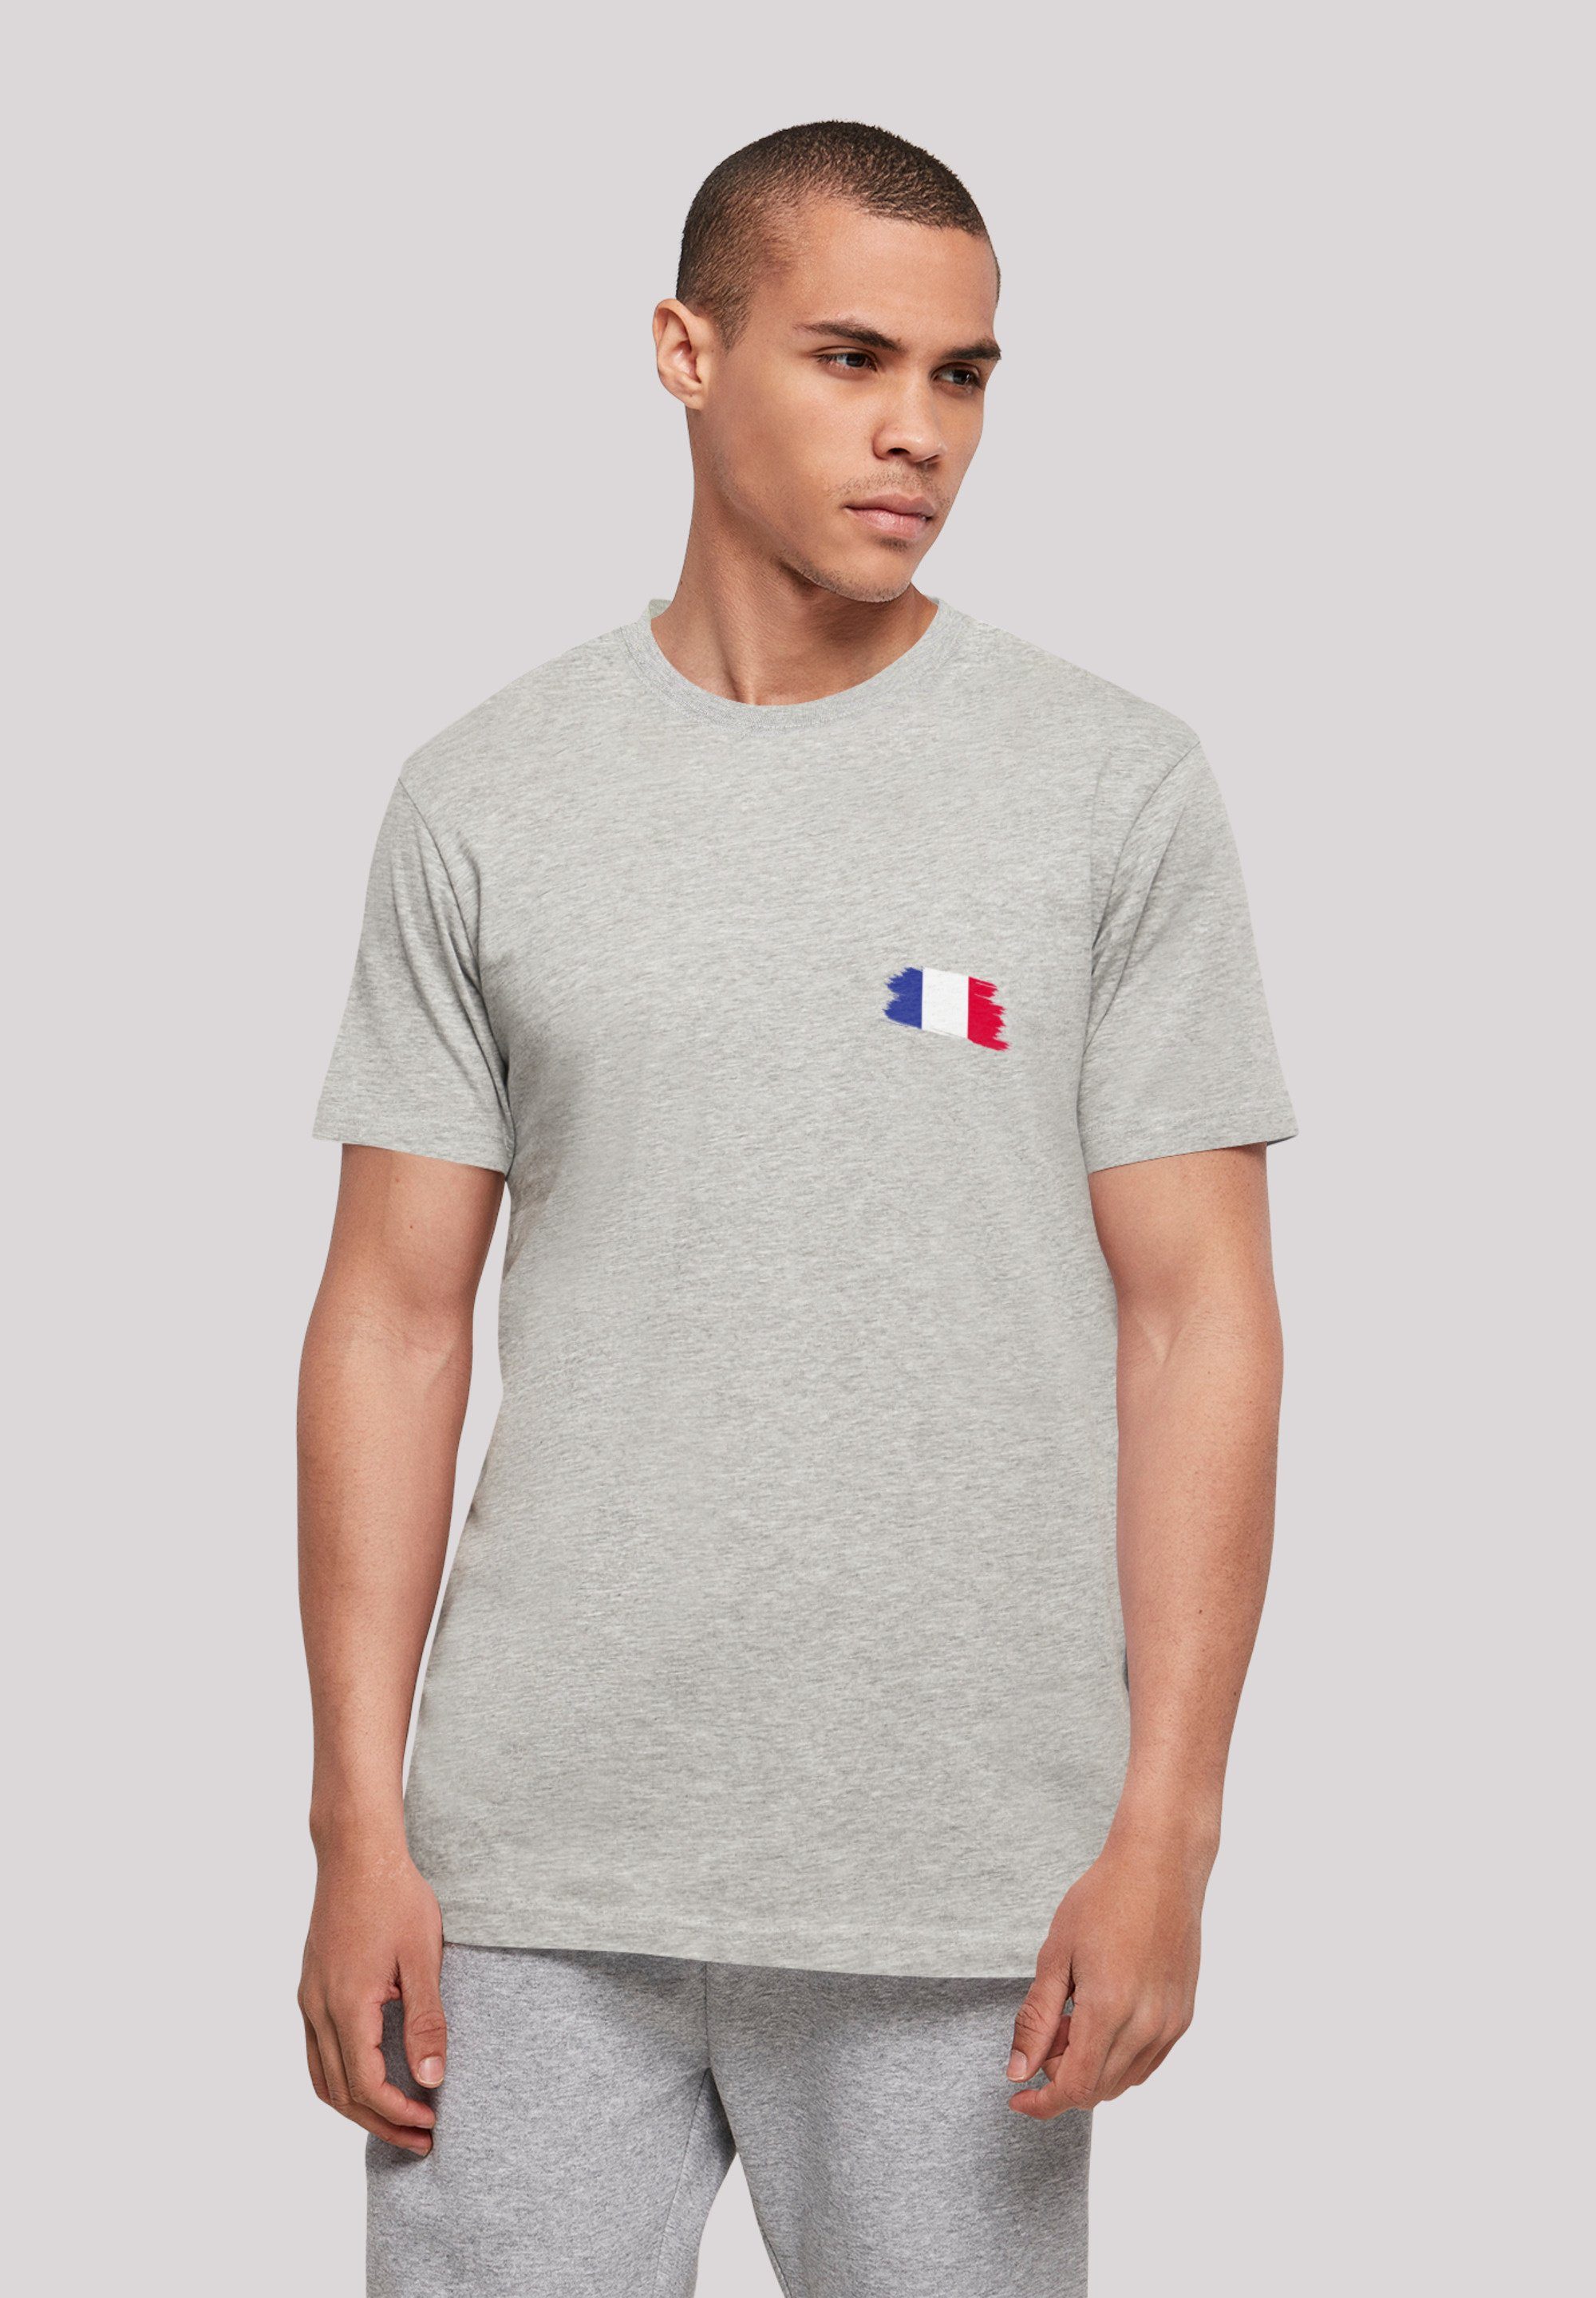 F4NT4STIC T-Shirt Frankreich Flagge France Print heather grey